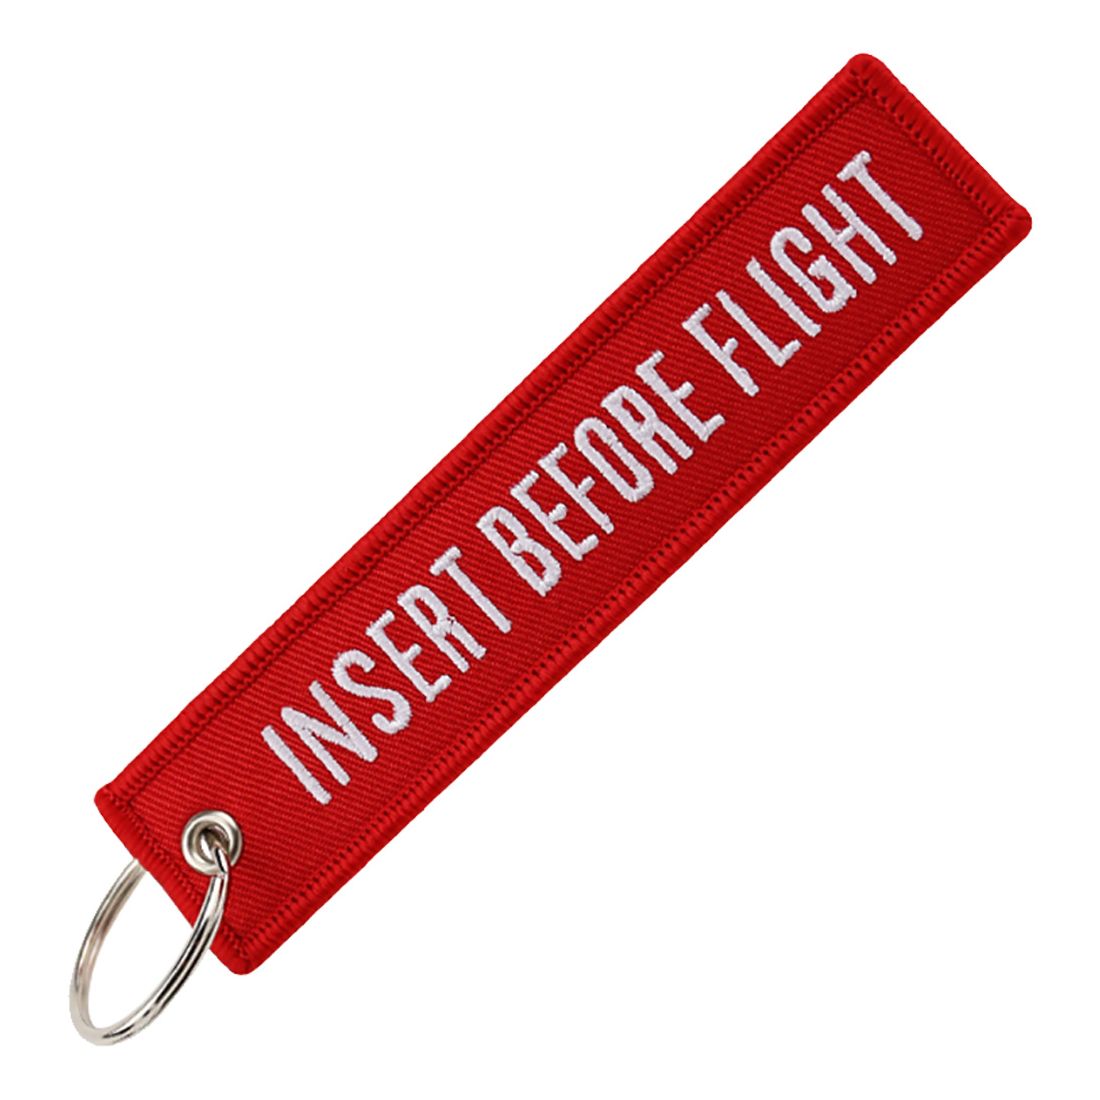 Porte Clés Red Insert Before Flight Clj Charles Le Jeune Porte clés